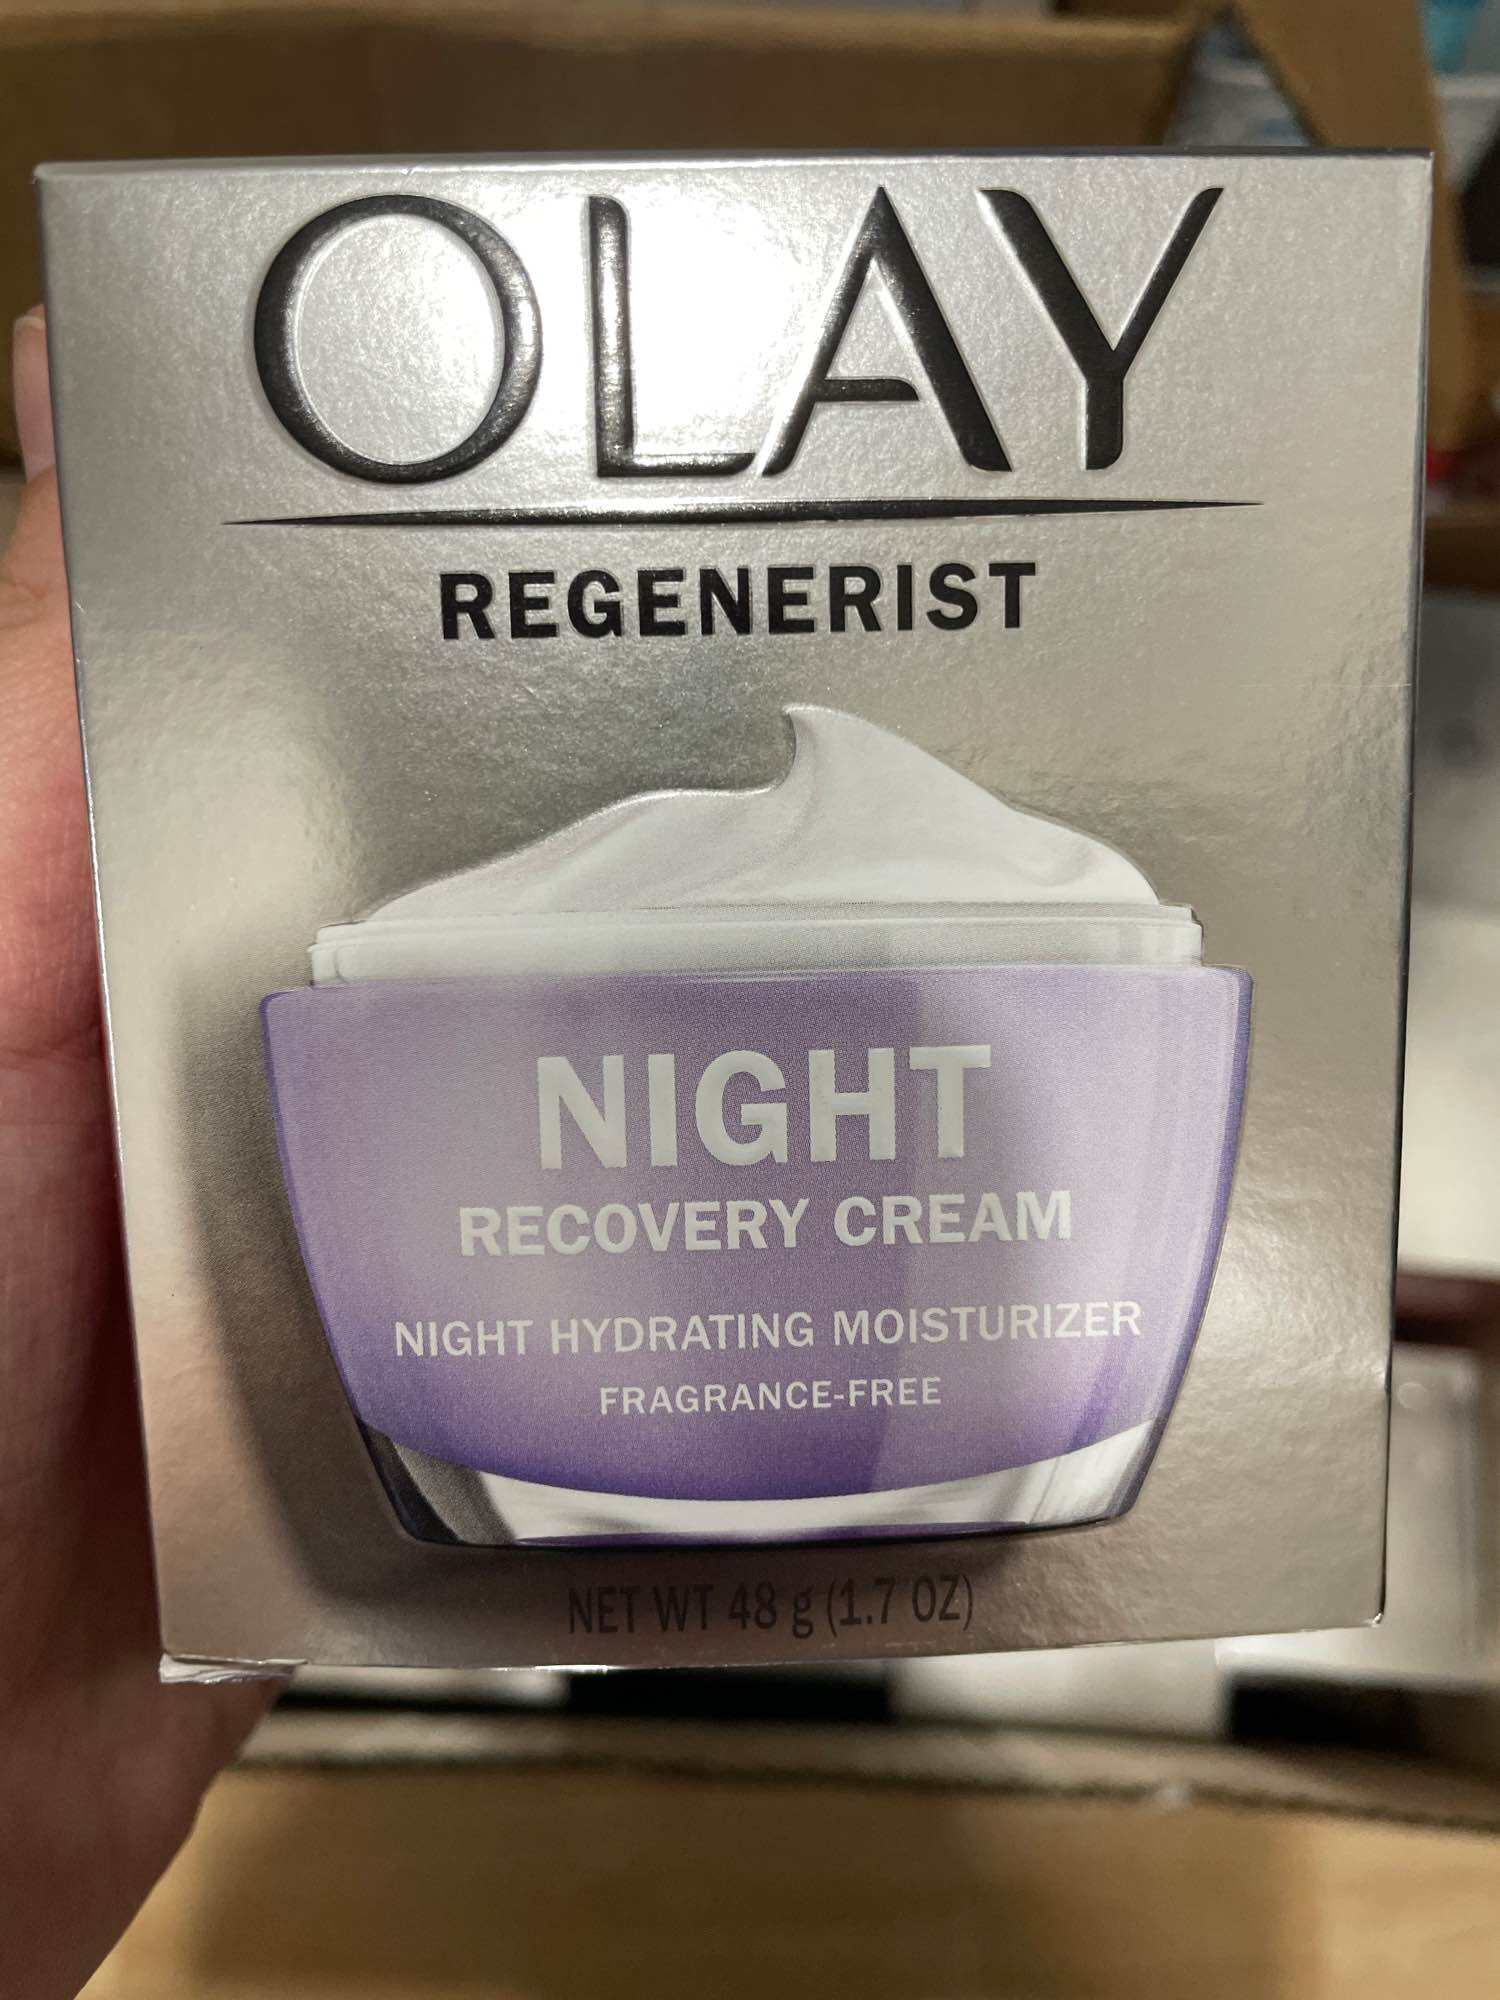 [HCM][Hàng Mỹ] Kem dưỡng ban đêm tái tạo da ngừa lão hóa Olay Regenerist Night Recovery Cream Face Moisturizer (48g)